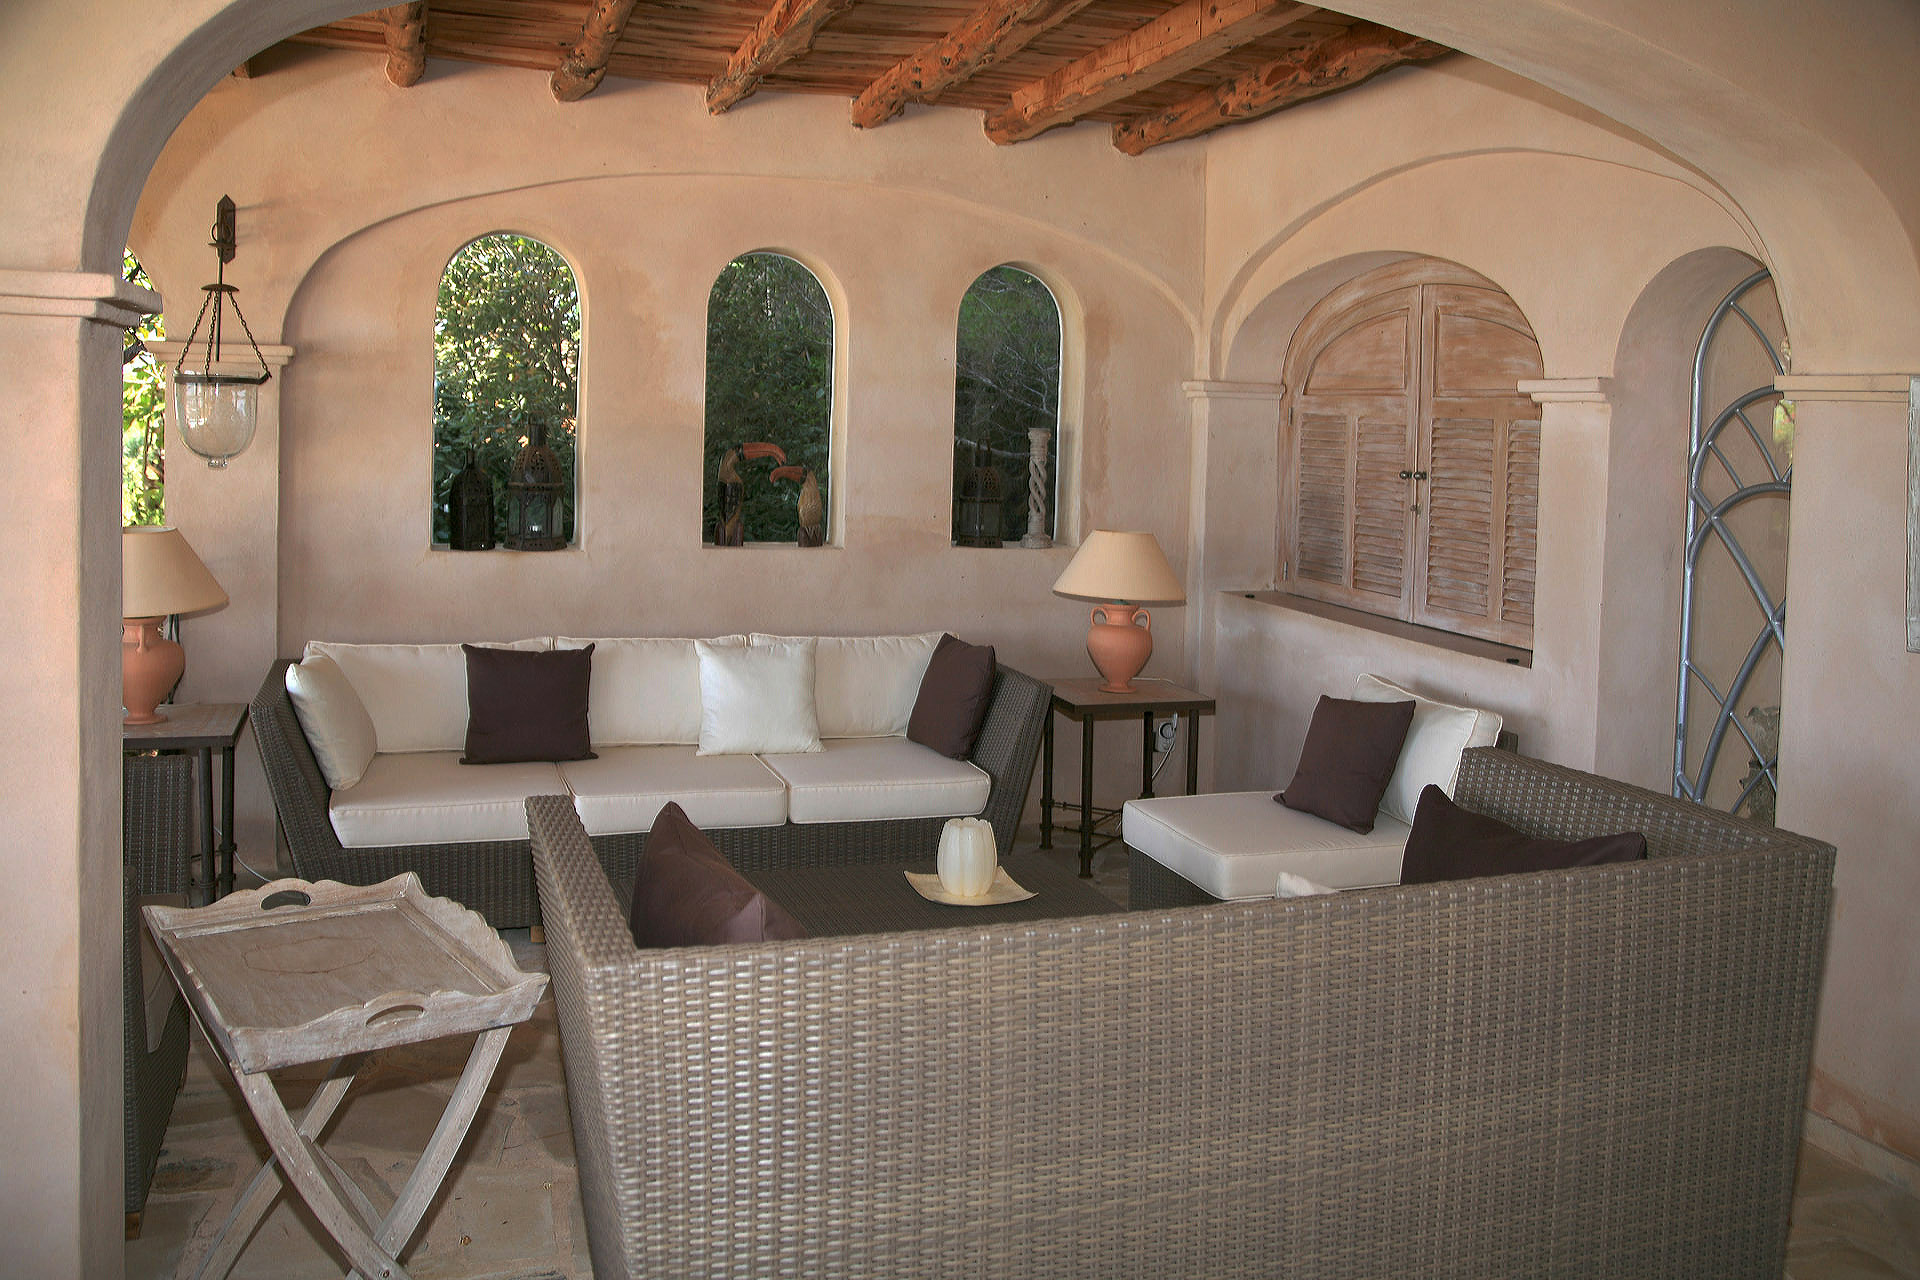 Spanien: Villa in südlicher Stil - Marcotte Style